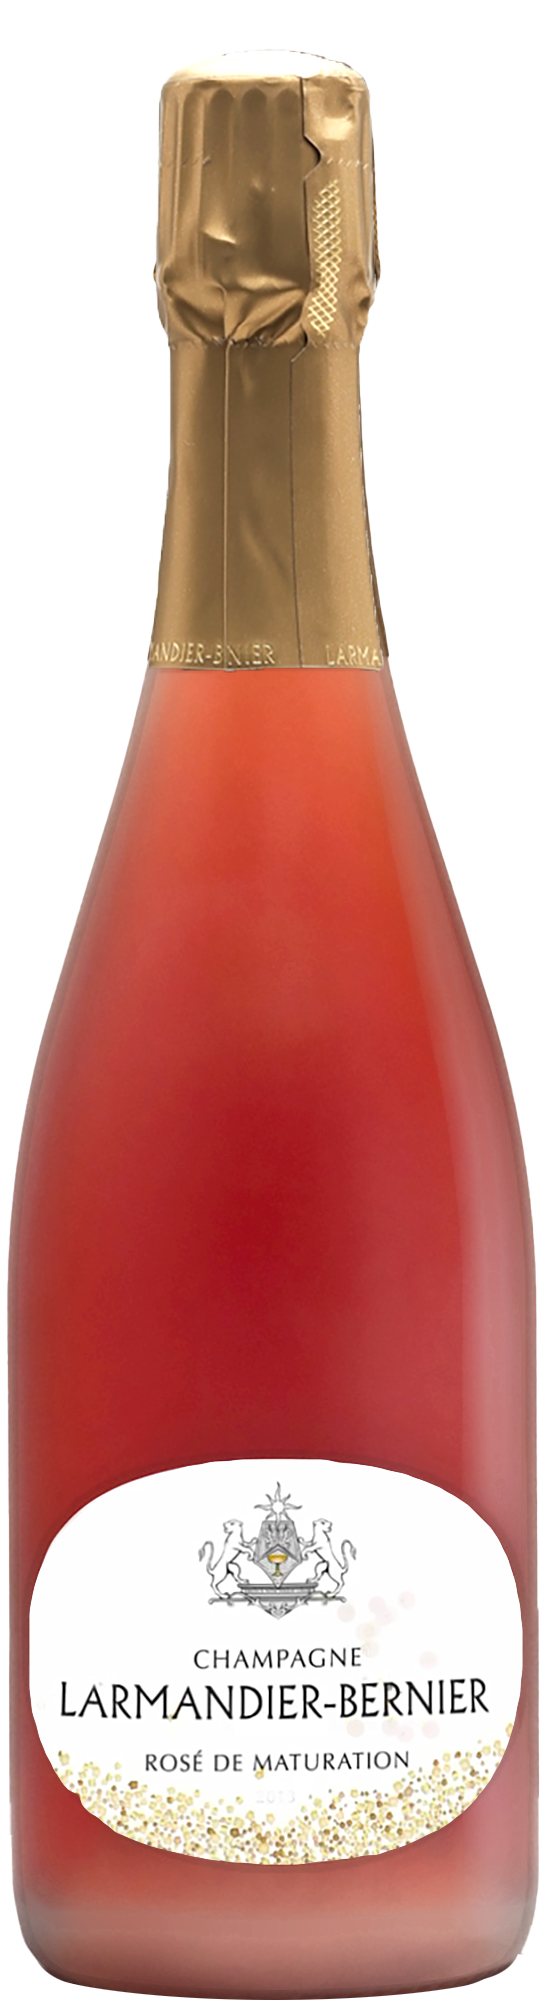 Champagne Larmandier-Bernier 1er Cru Rosé de Maturation 2014 (Disg. Jan 2021)